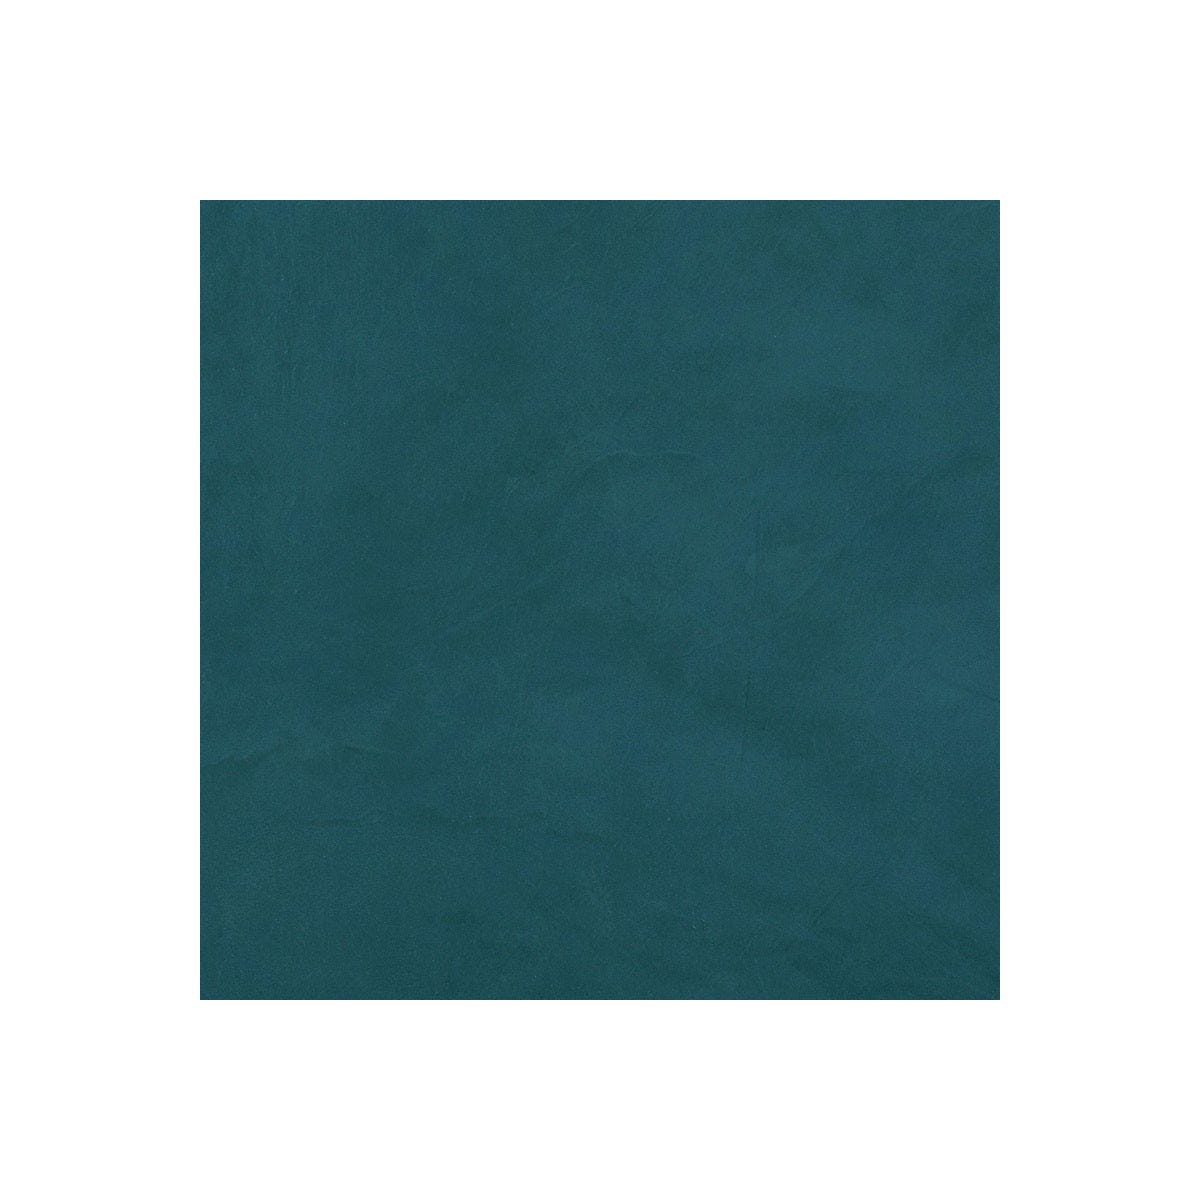 Béton Ciré Escalier - Complet primaire et vernis de finition - En neuf ou rénovation Turquin Bleu - 2 m² (en 2 couches)ARCANE INDUSTRIES 2